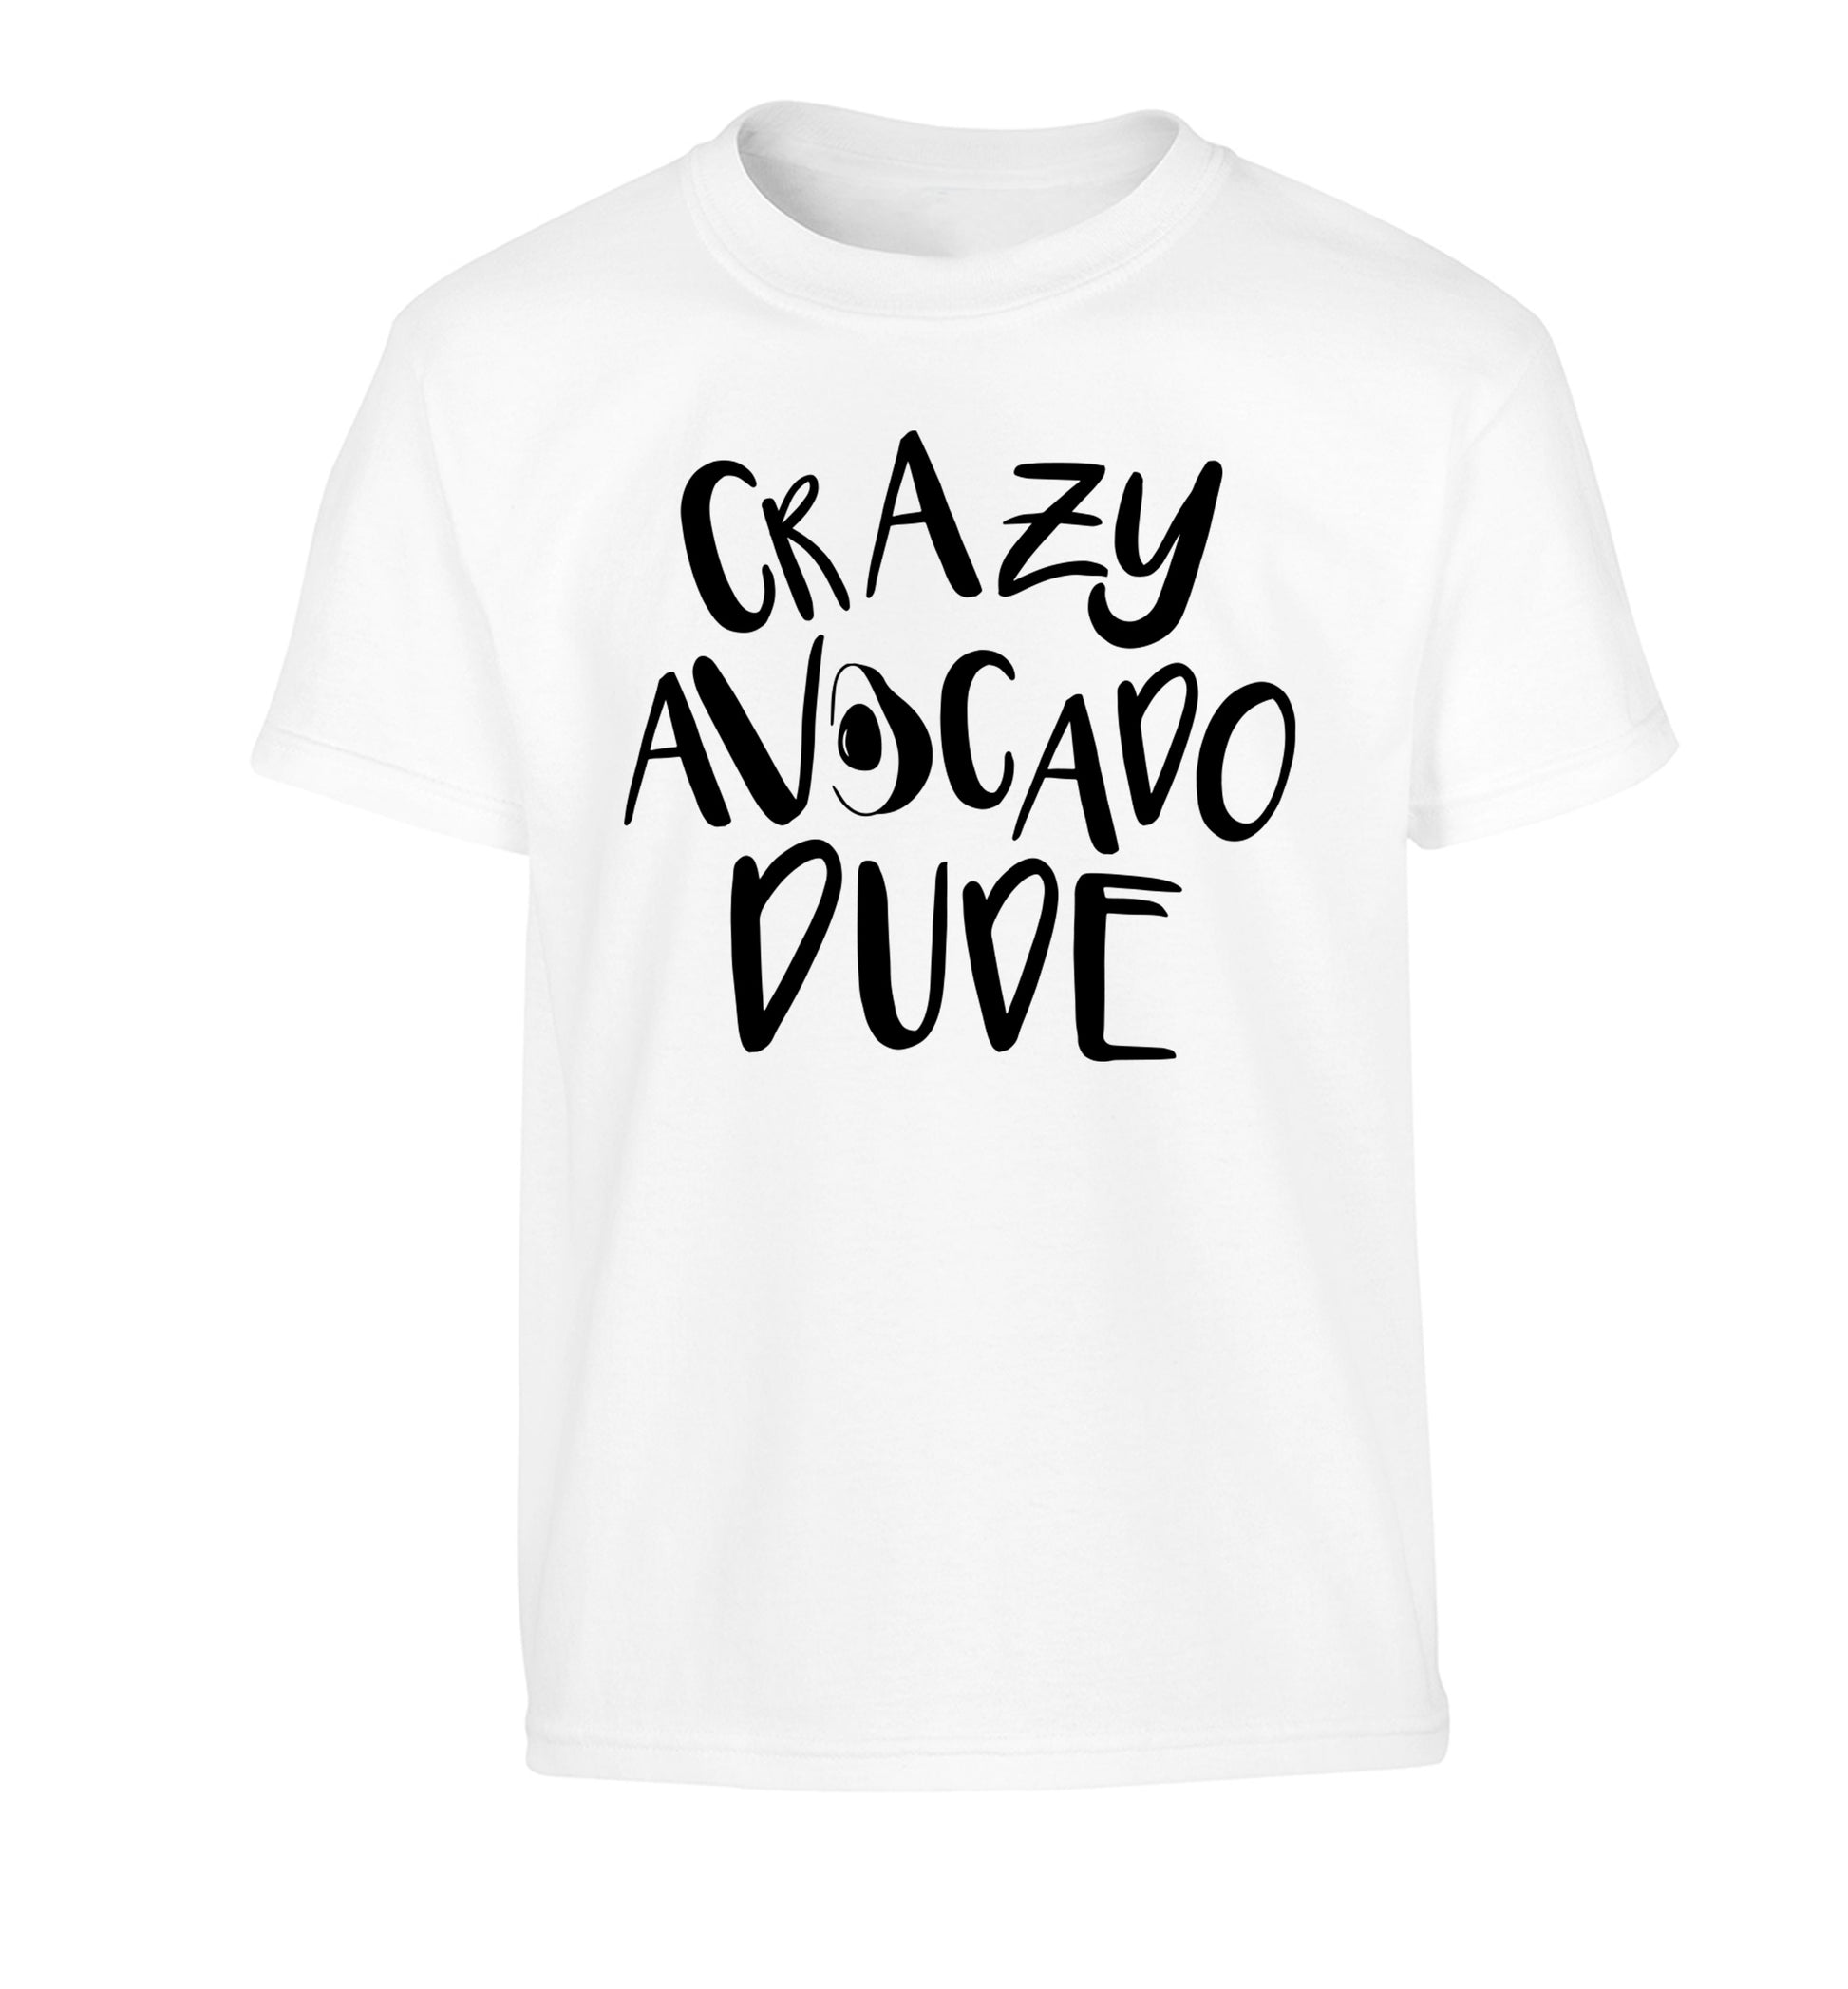 Crazy avocado dude Children's white Tshirt 12-14 Years